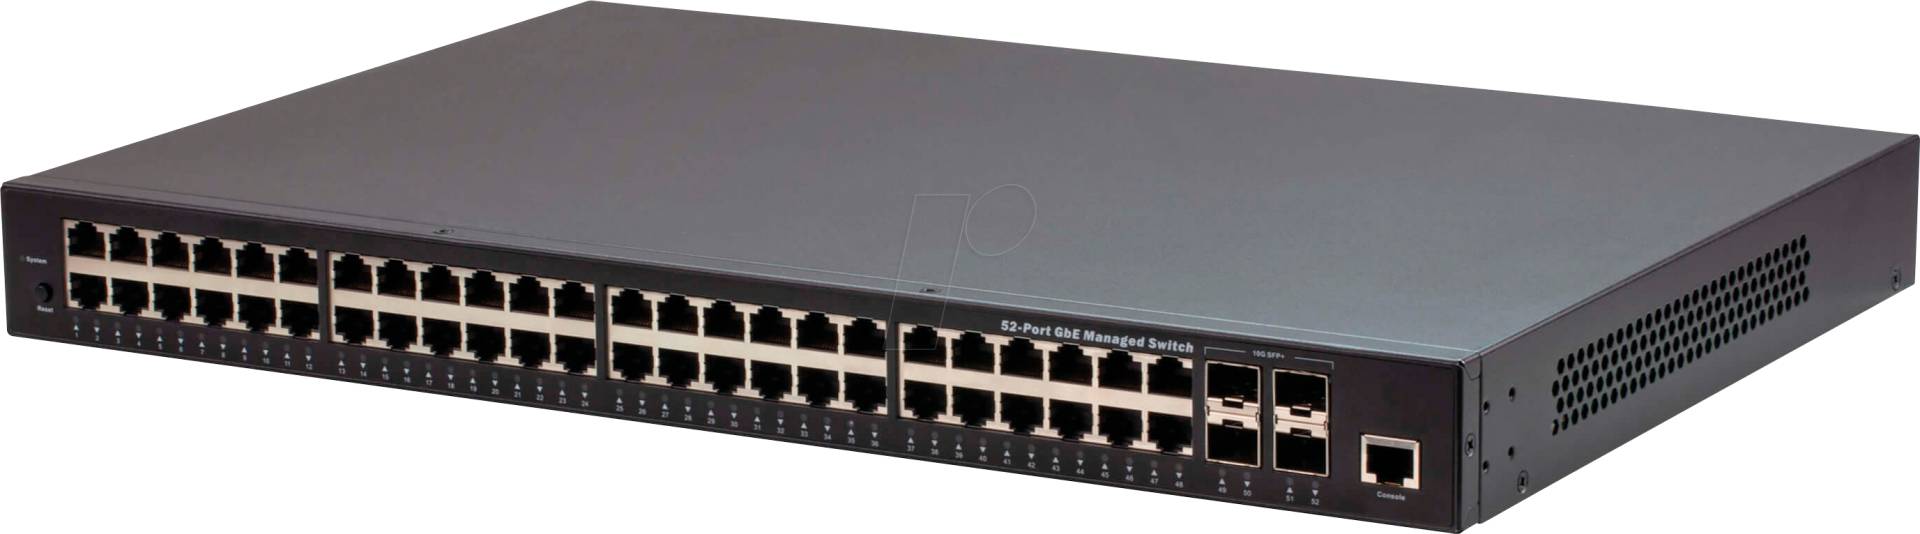 ATEN ES0152 - Switch, 52-Port, Gigabit Ethernet, SFP+ von Aten